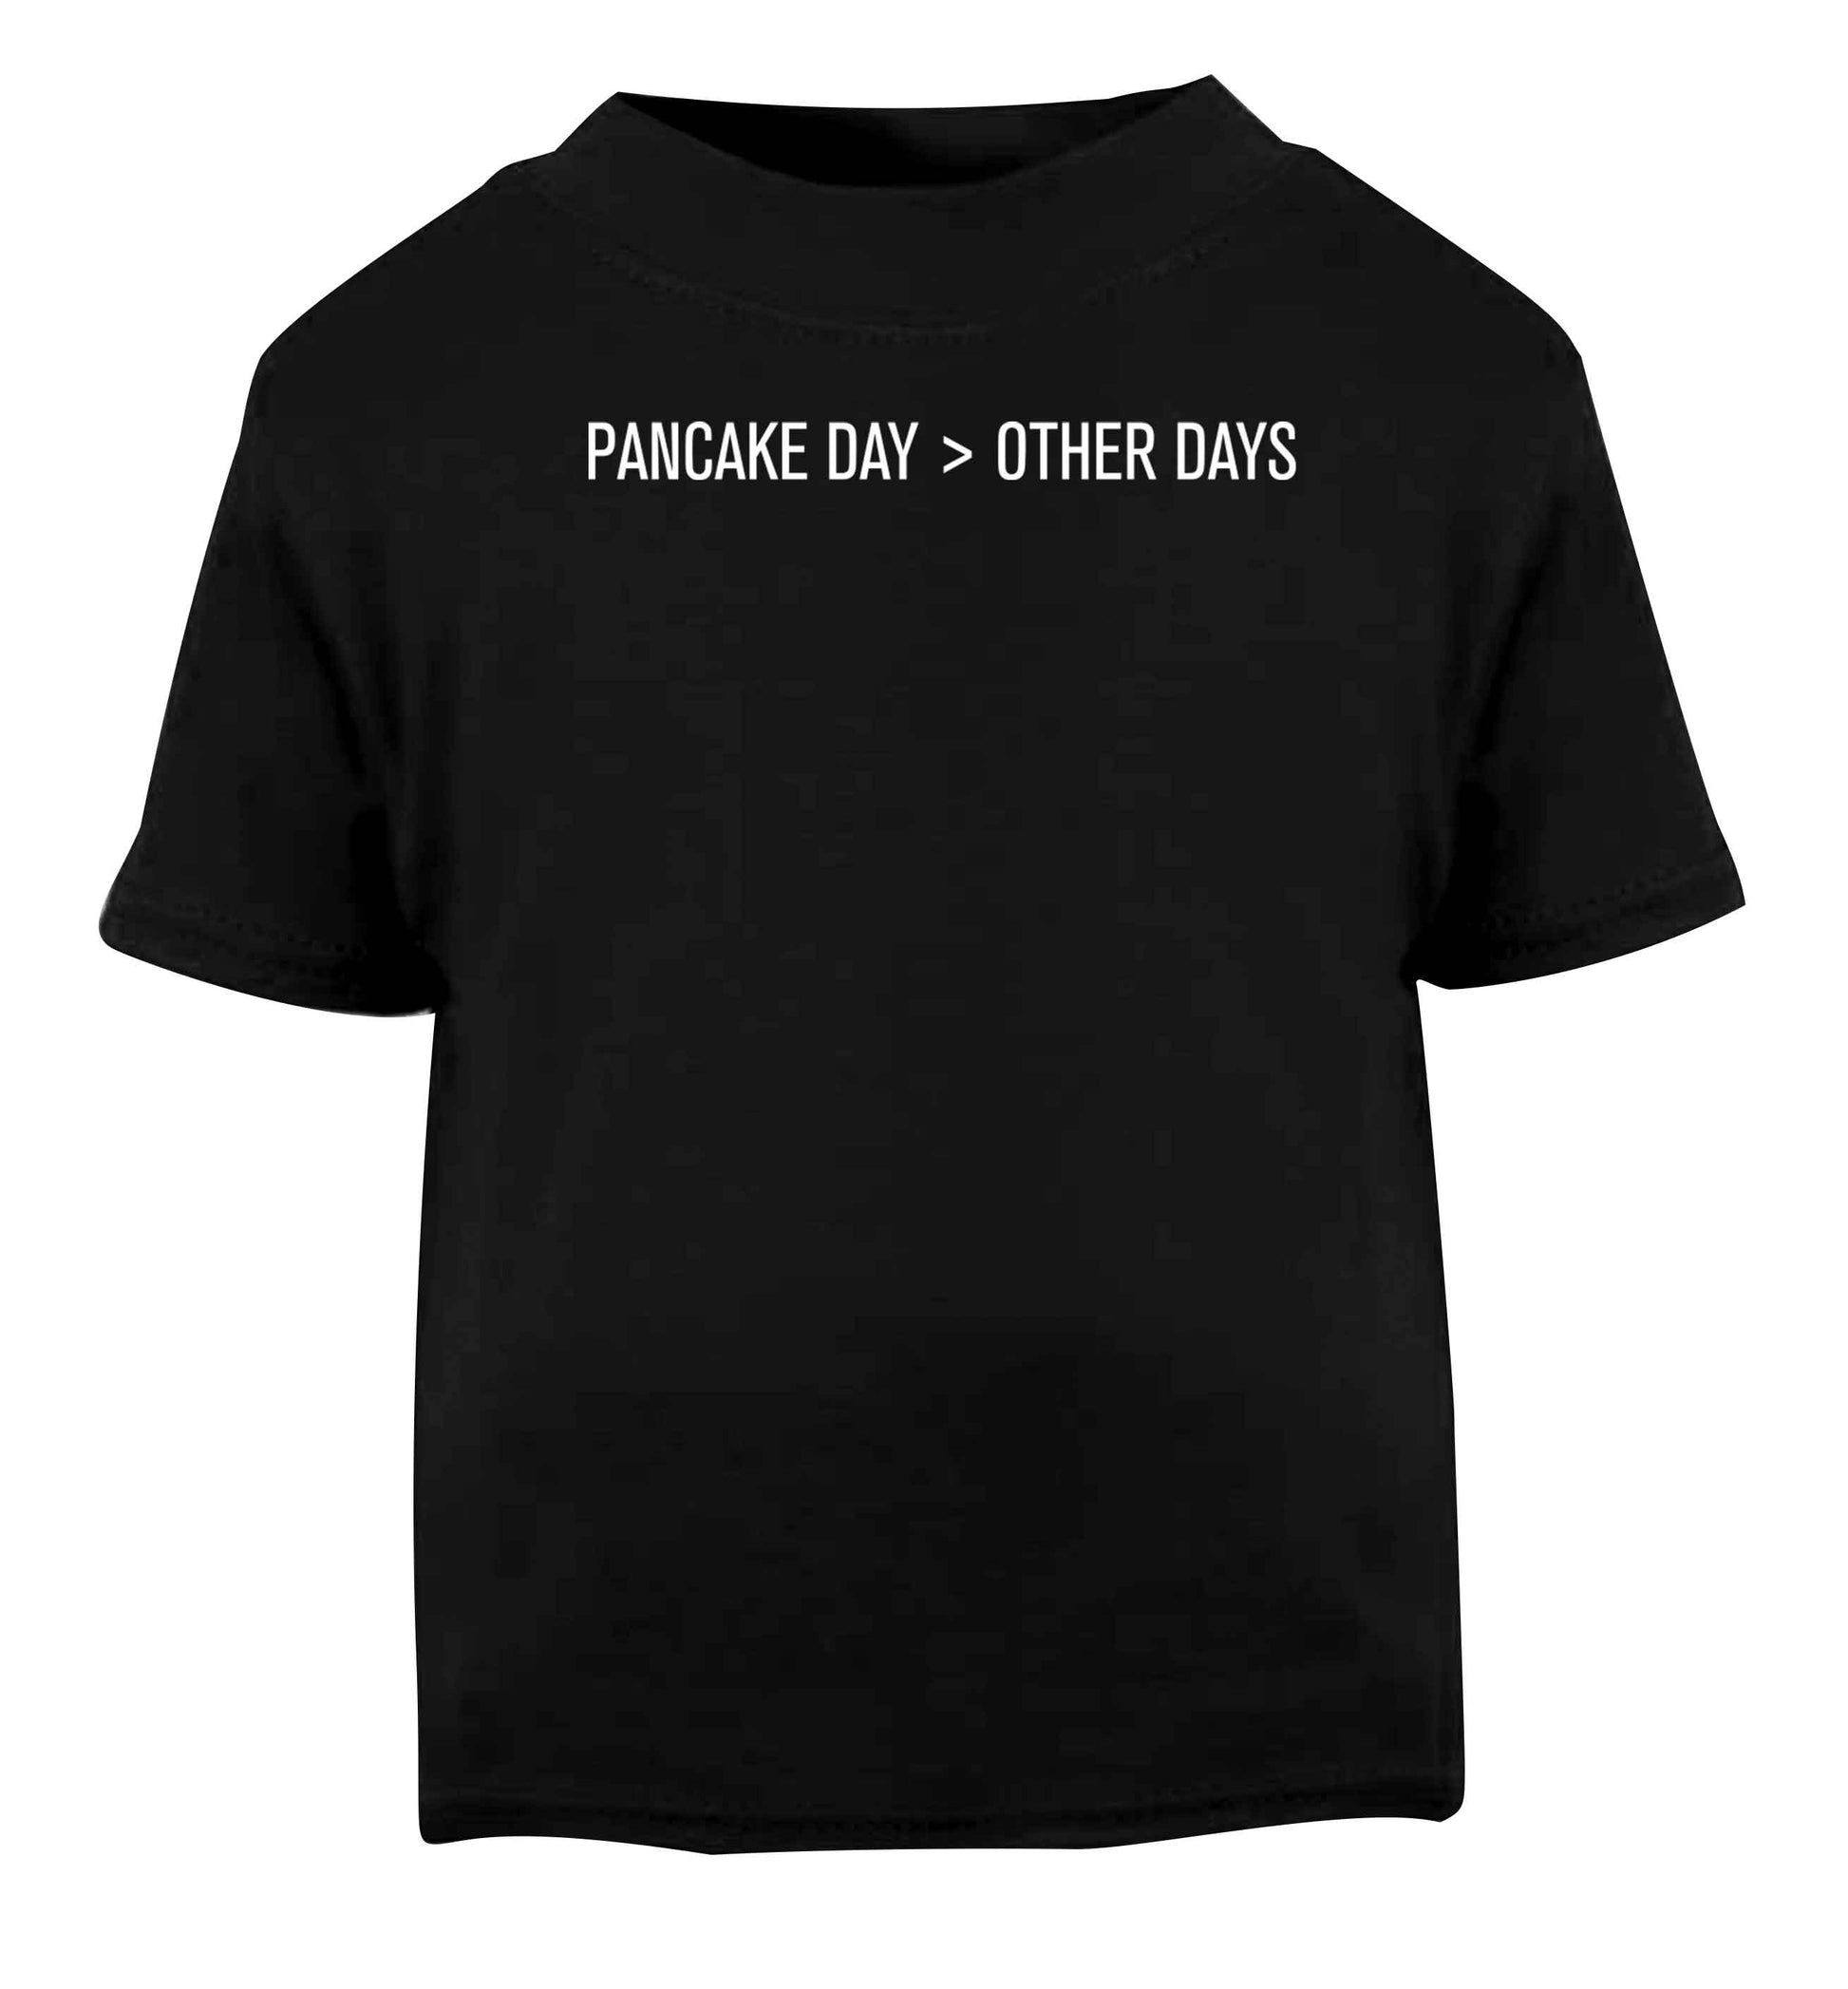 Pancake day > other days Black baby toddler Tshirt 2 years